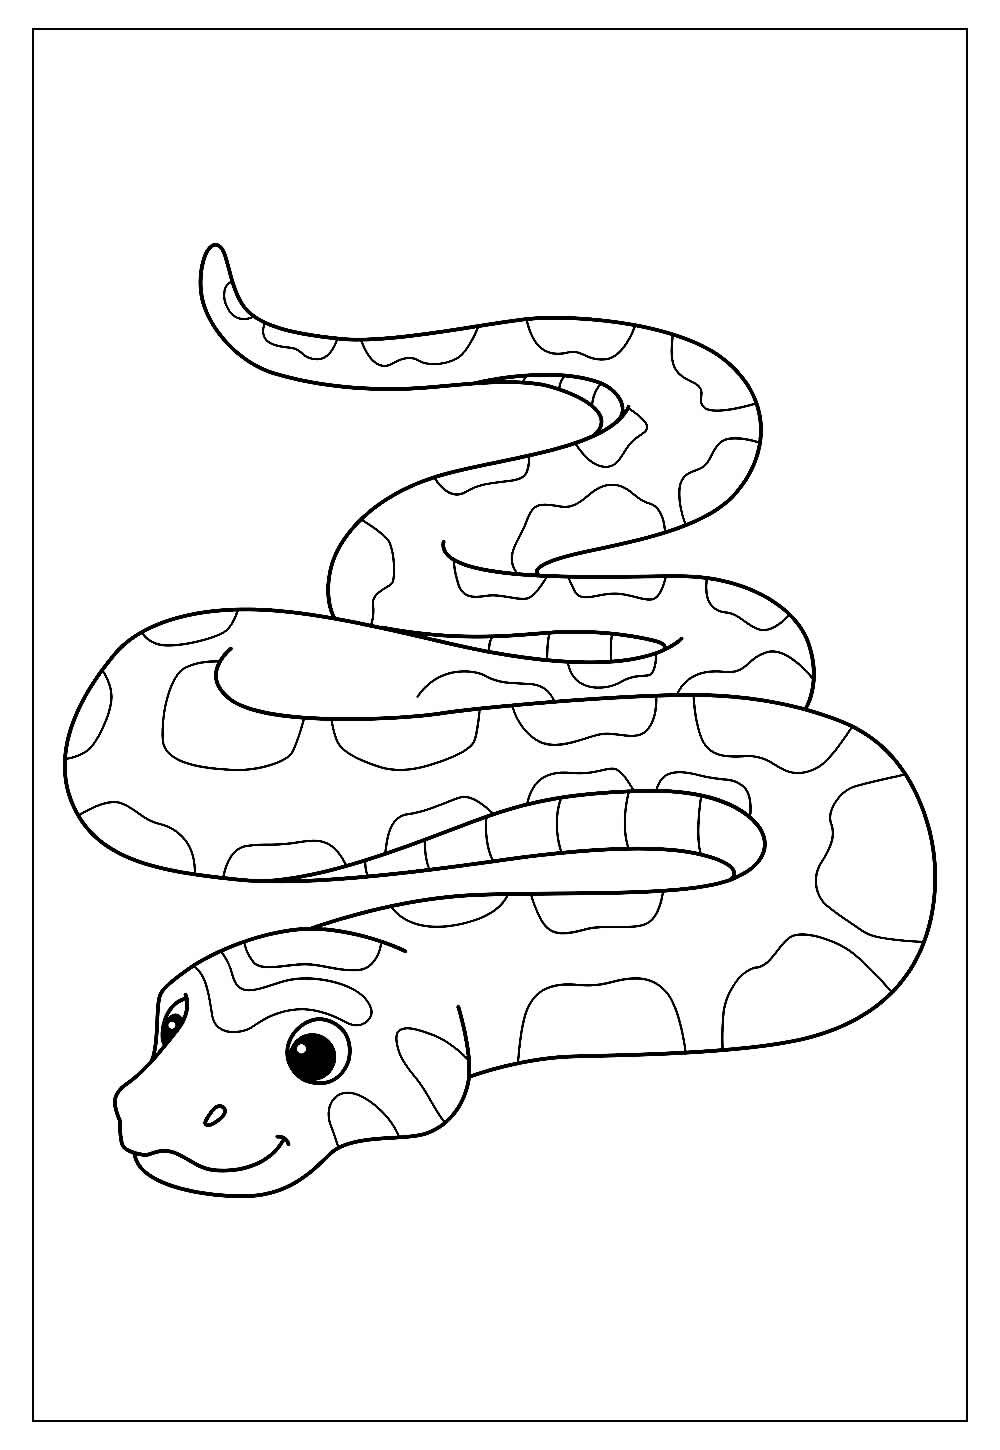 Desenho Para Colorir cobra - Imagens Grátis Para Imprimir - img 27866